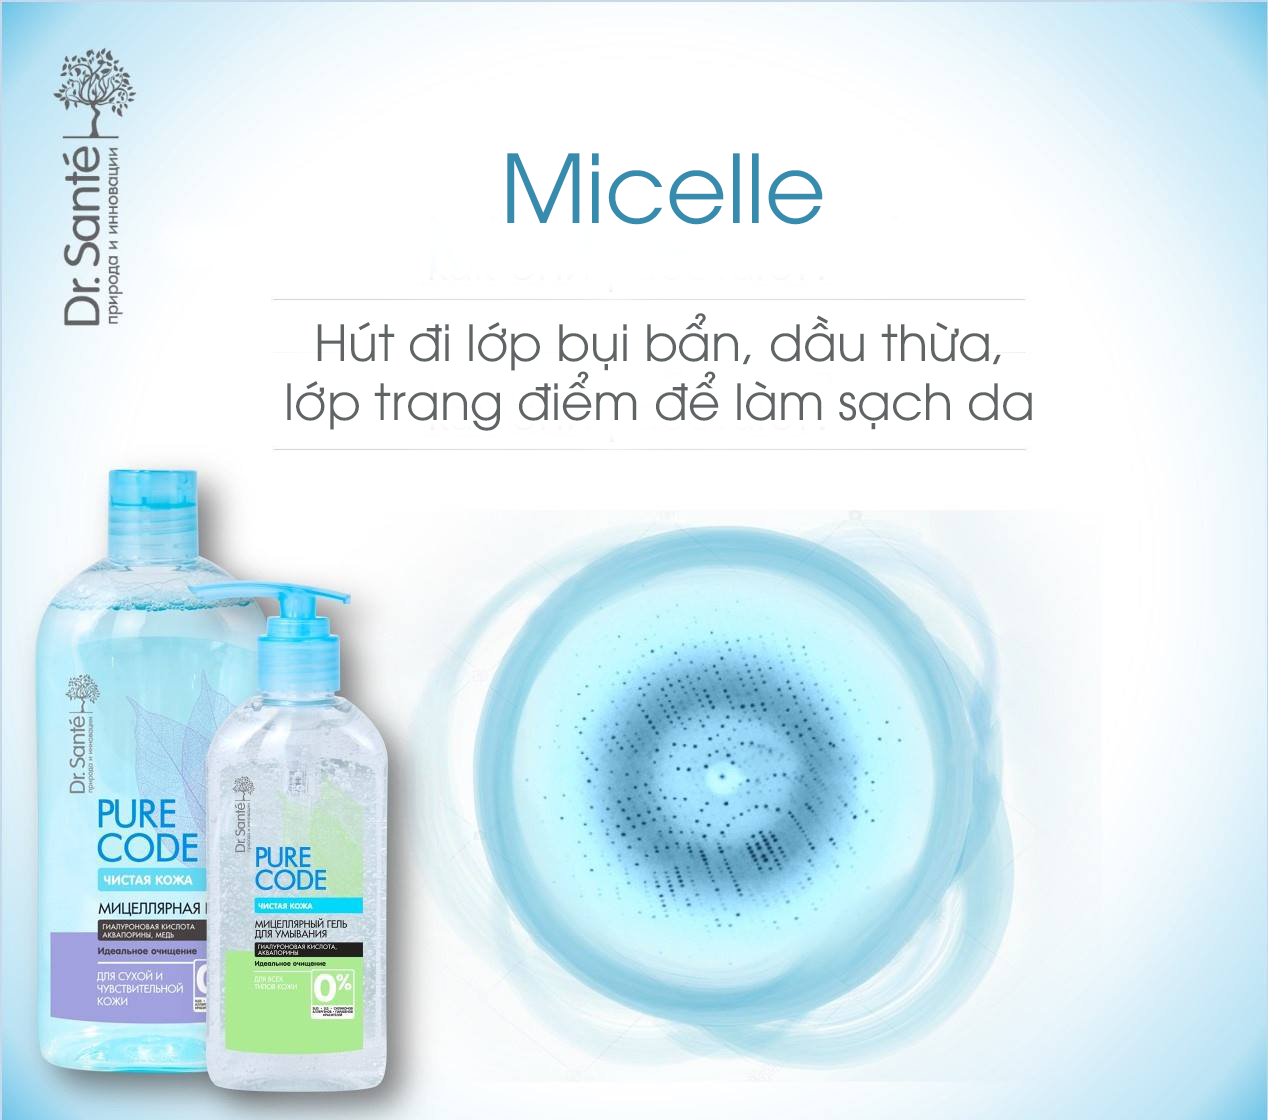 Nước tẩy trang Micellar Pure Cоde dành cho mọi loại da 500ml